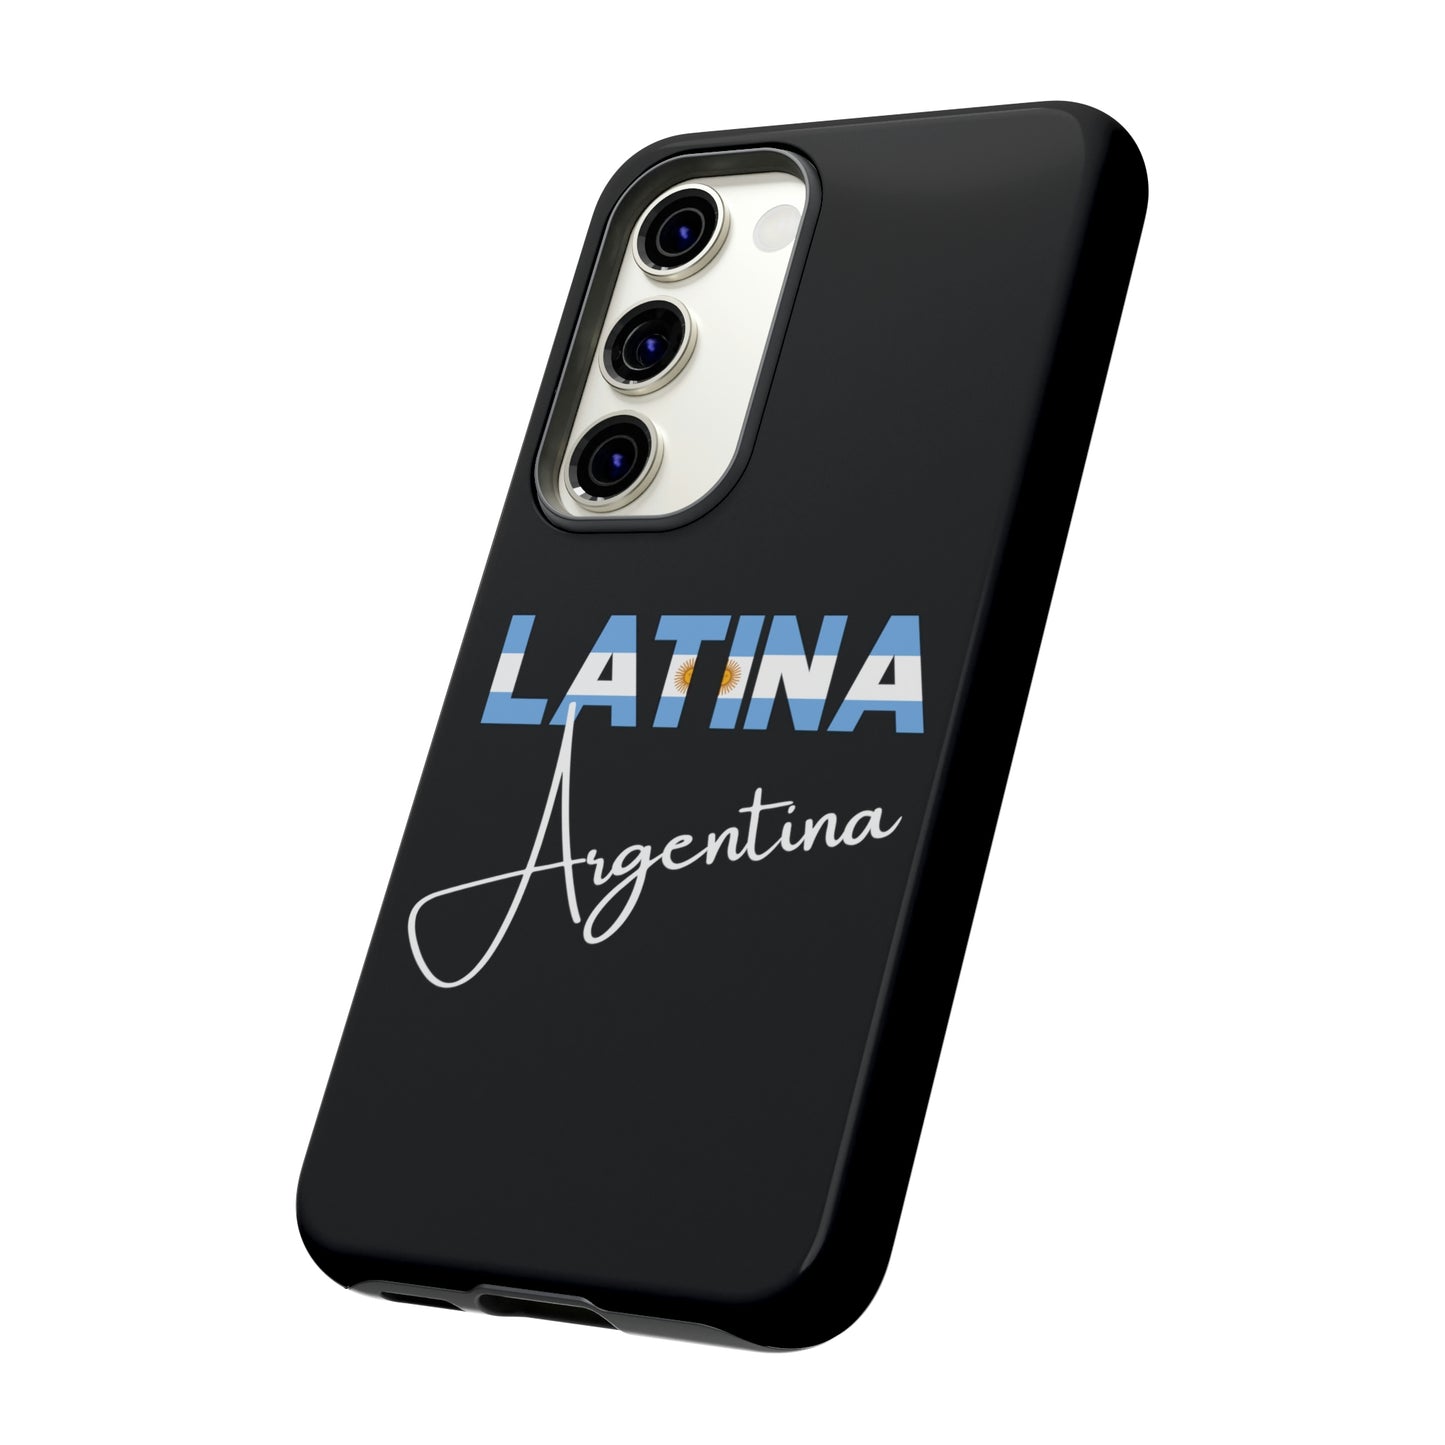 Latina Argentina, Tough Phone Case